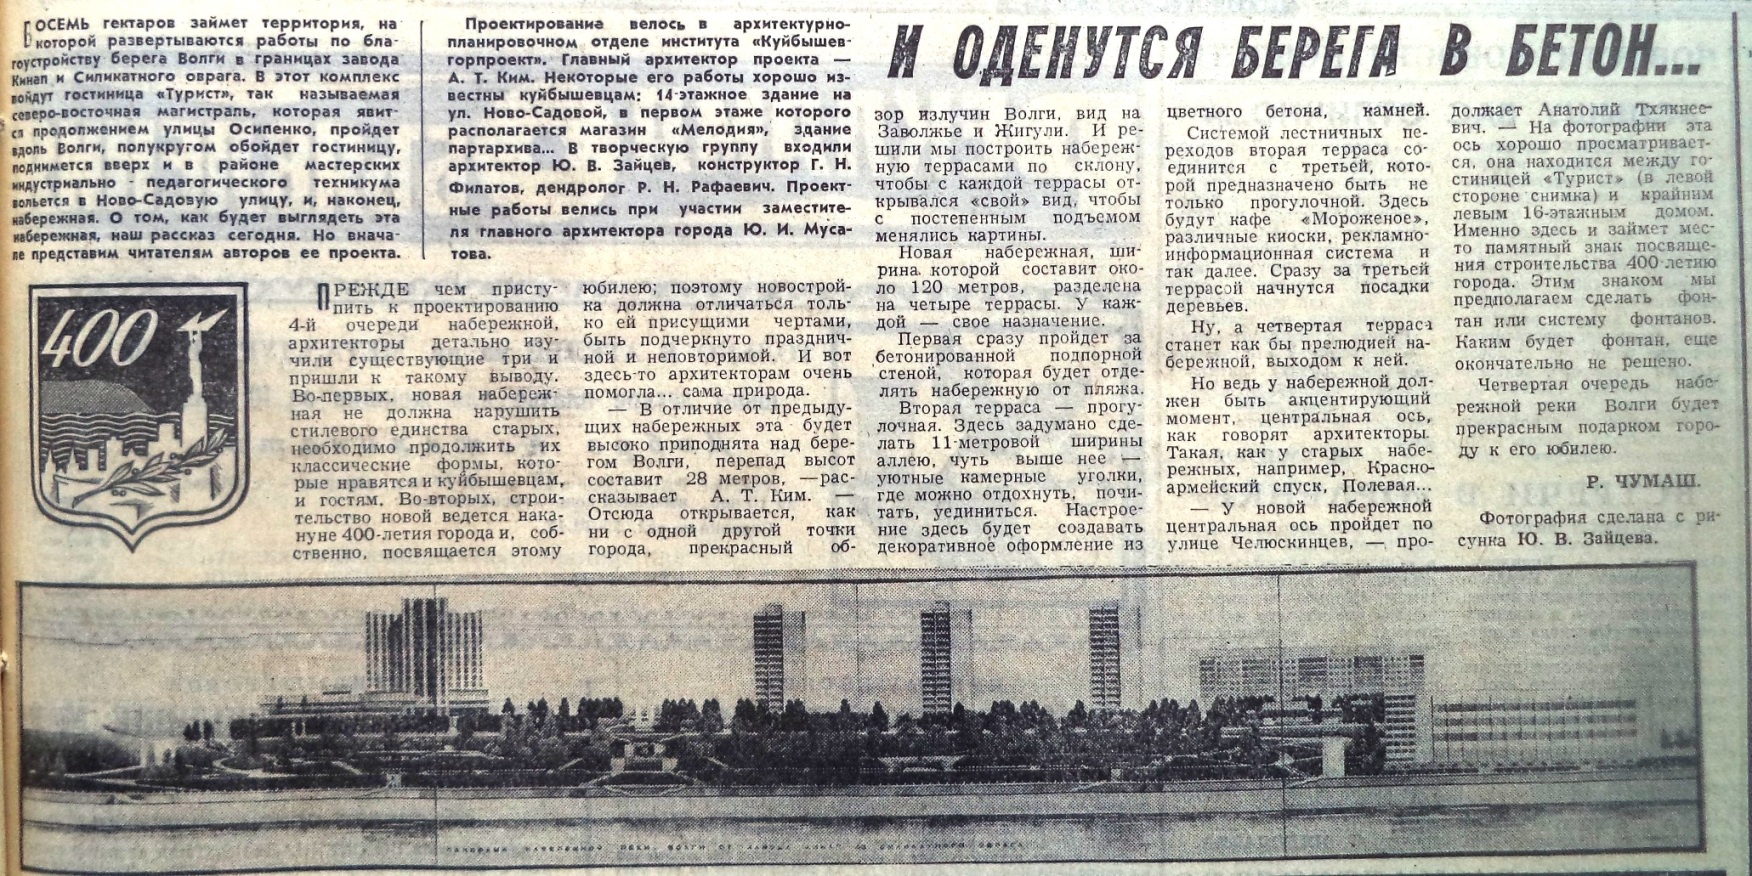 ФОТО-Лесная-13-ВЗя-1983-08-02-проект 4-й оч. набер.